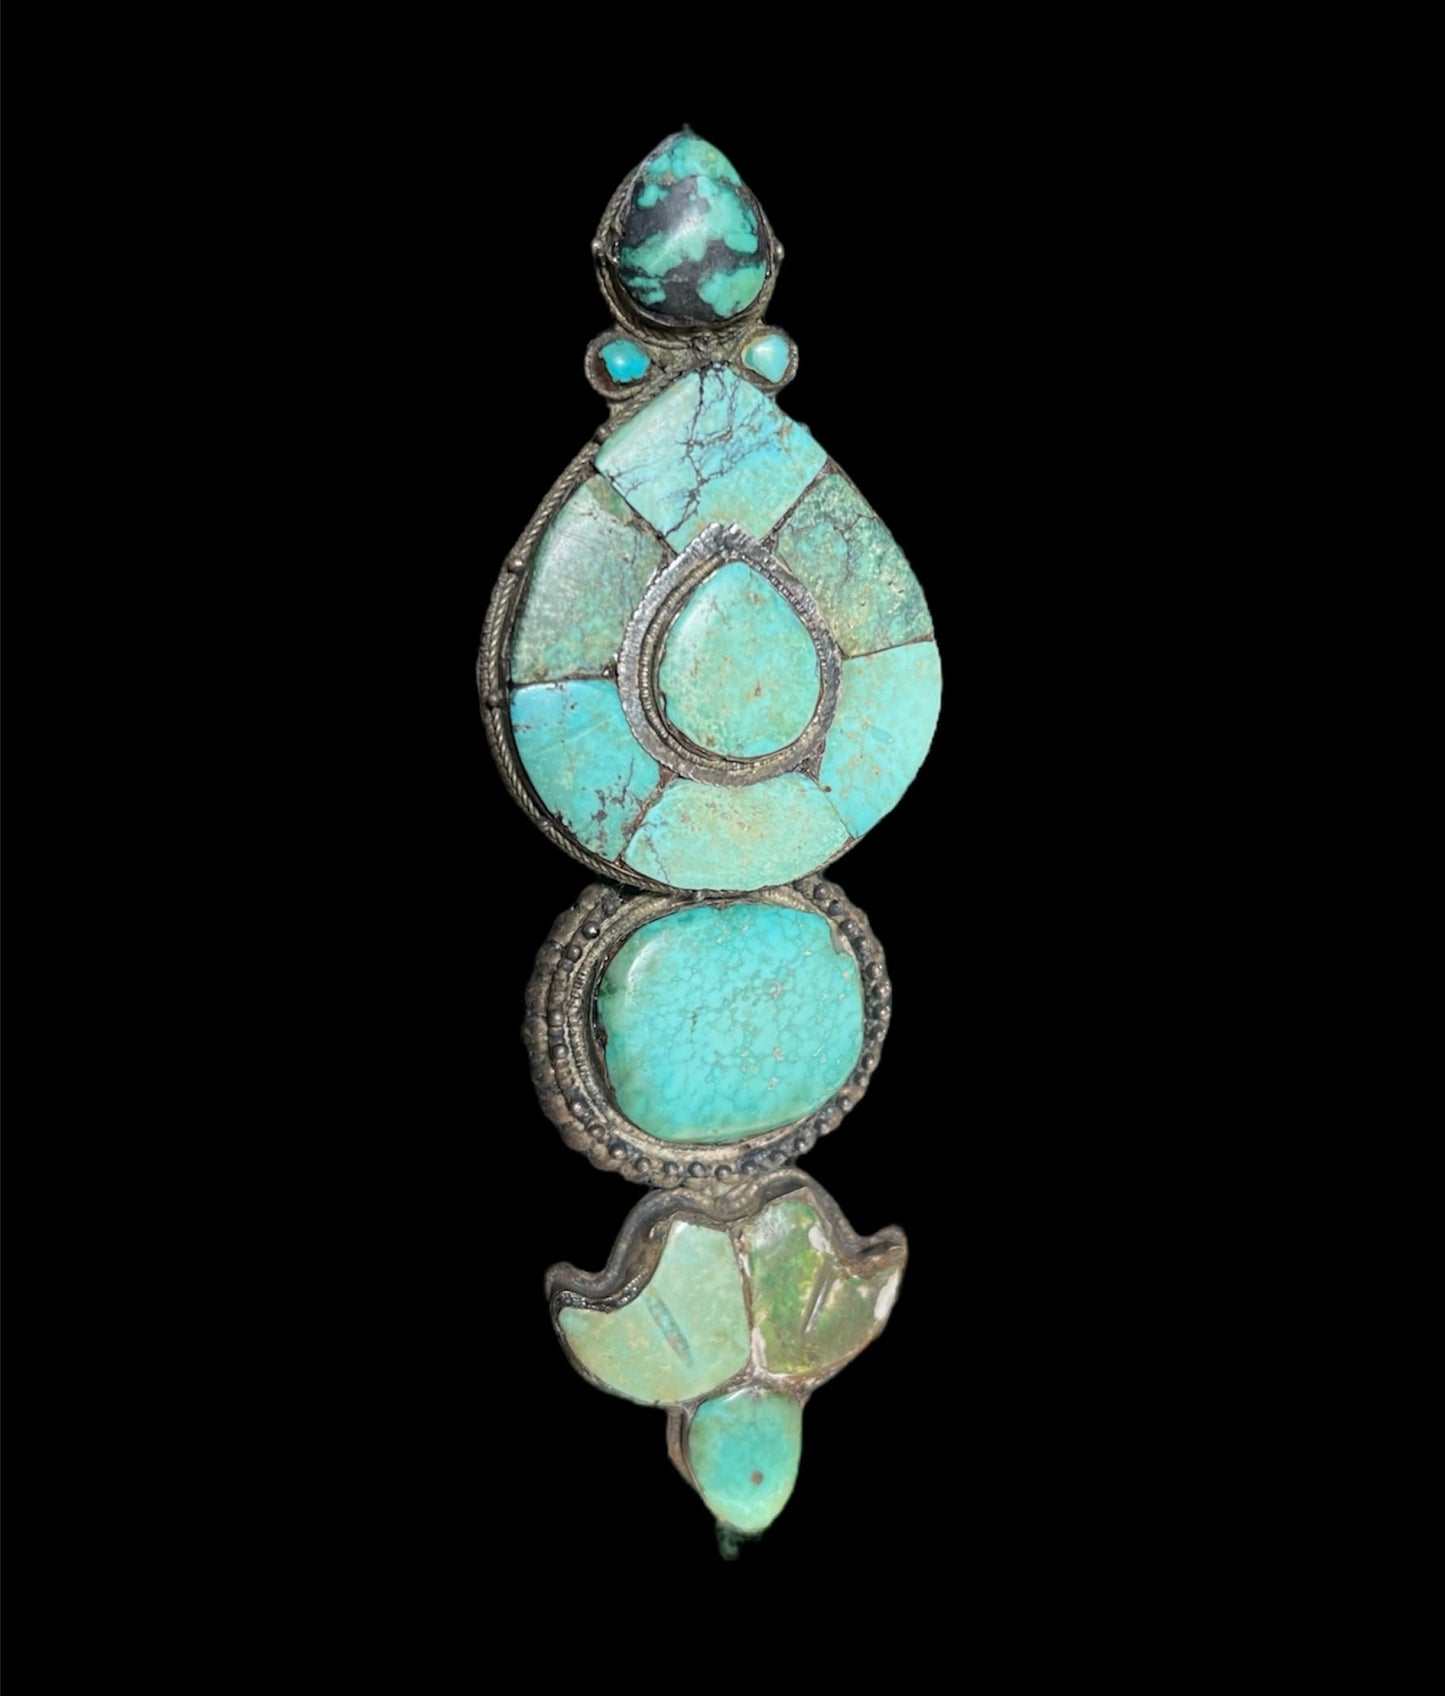 A single antique ear pendant - Tibetan aykhor